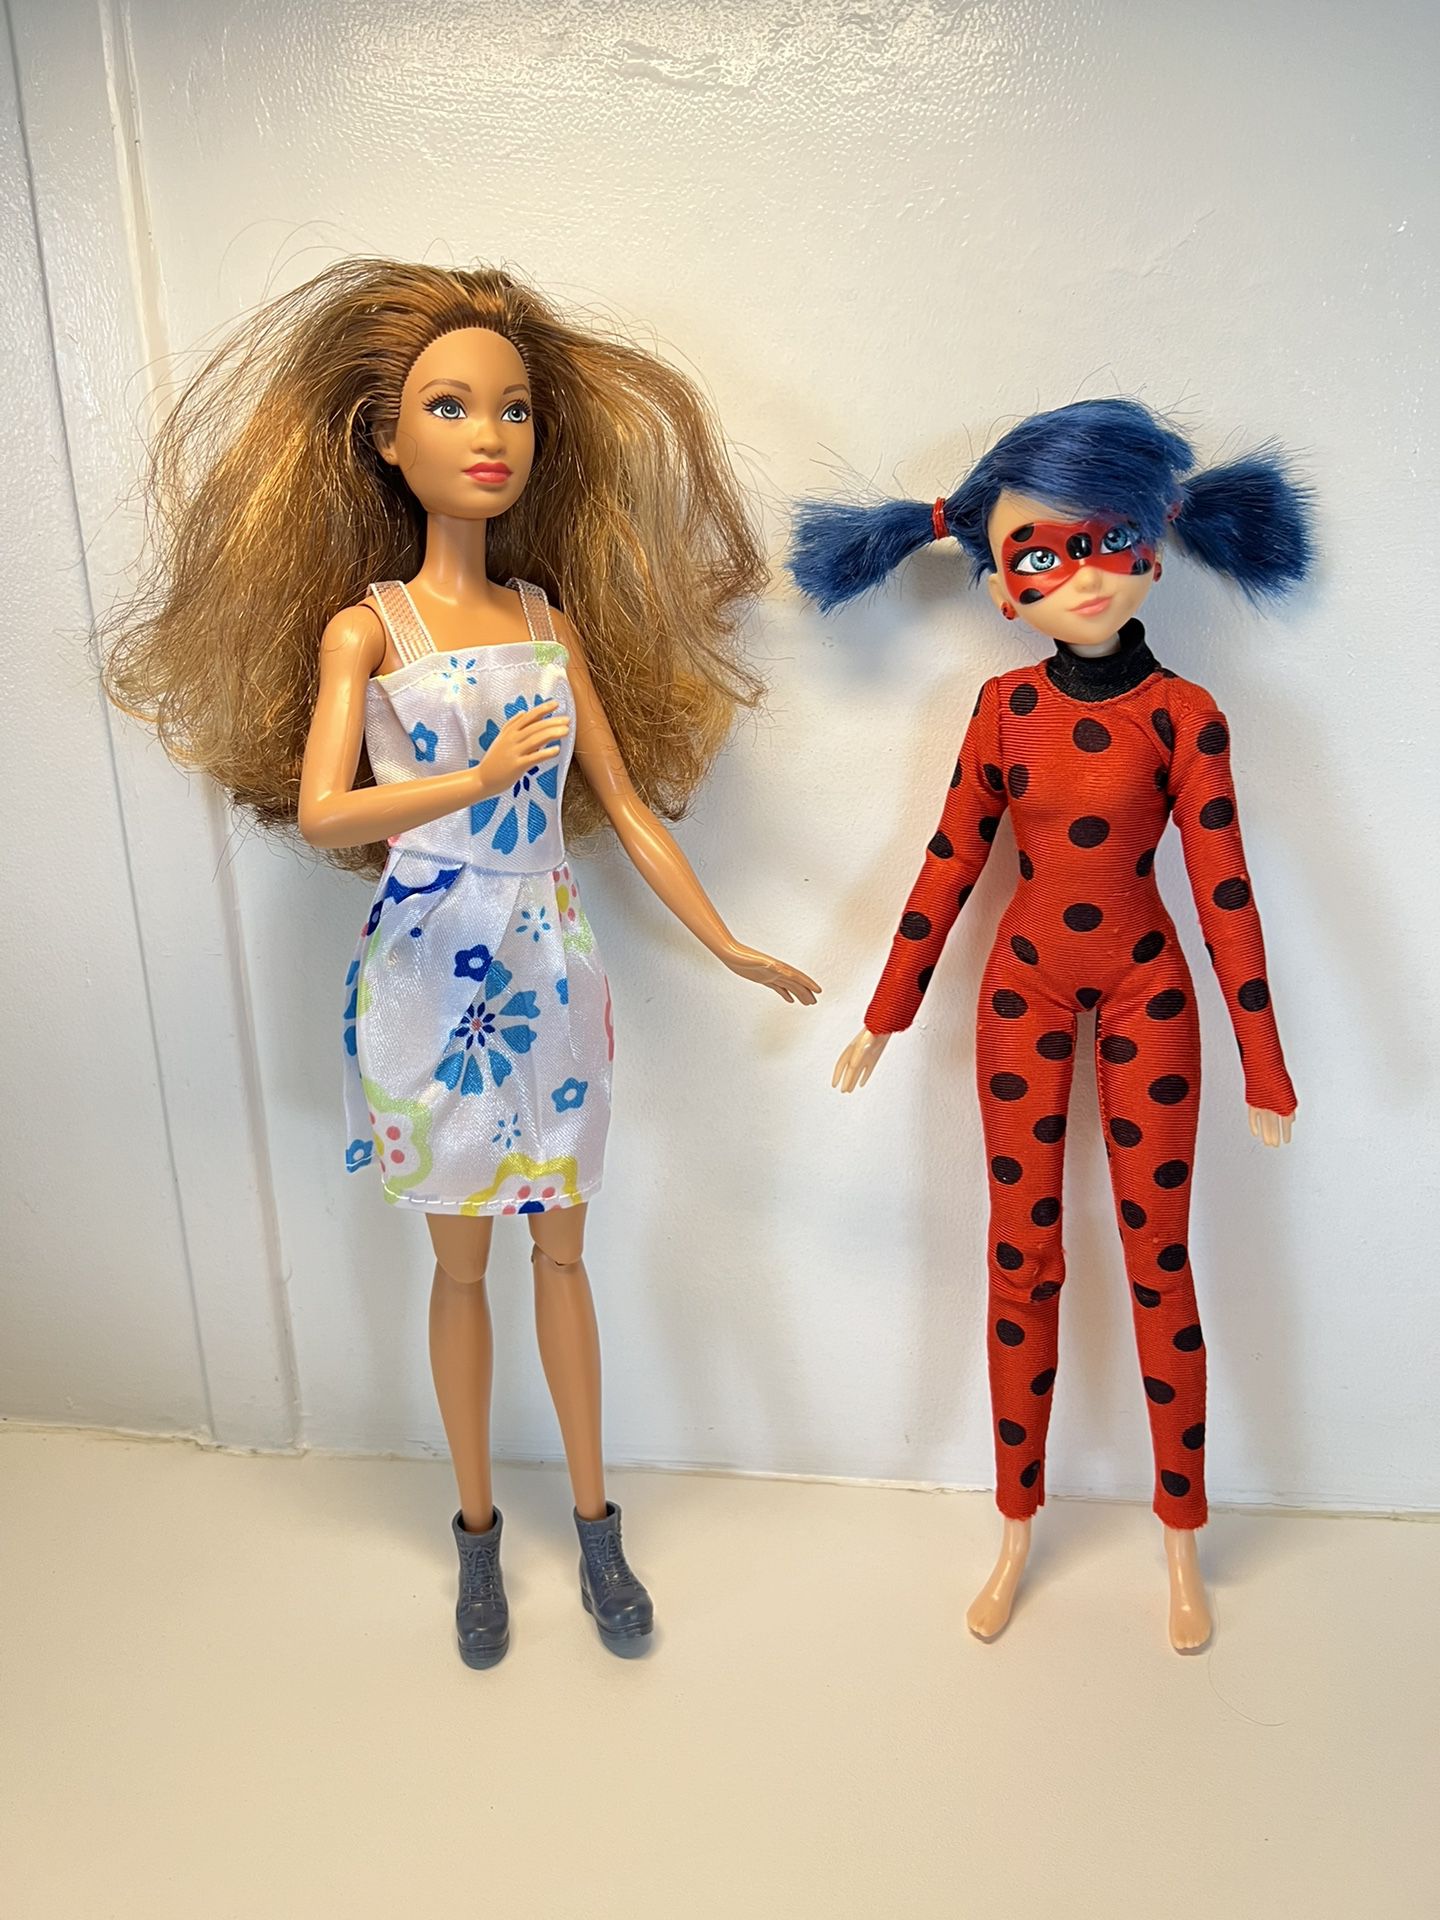 Ladybug Fashion Doll 10.5" tall  2 dolls 